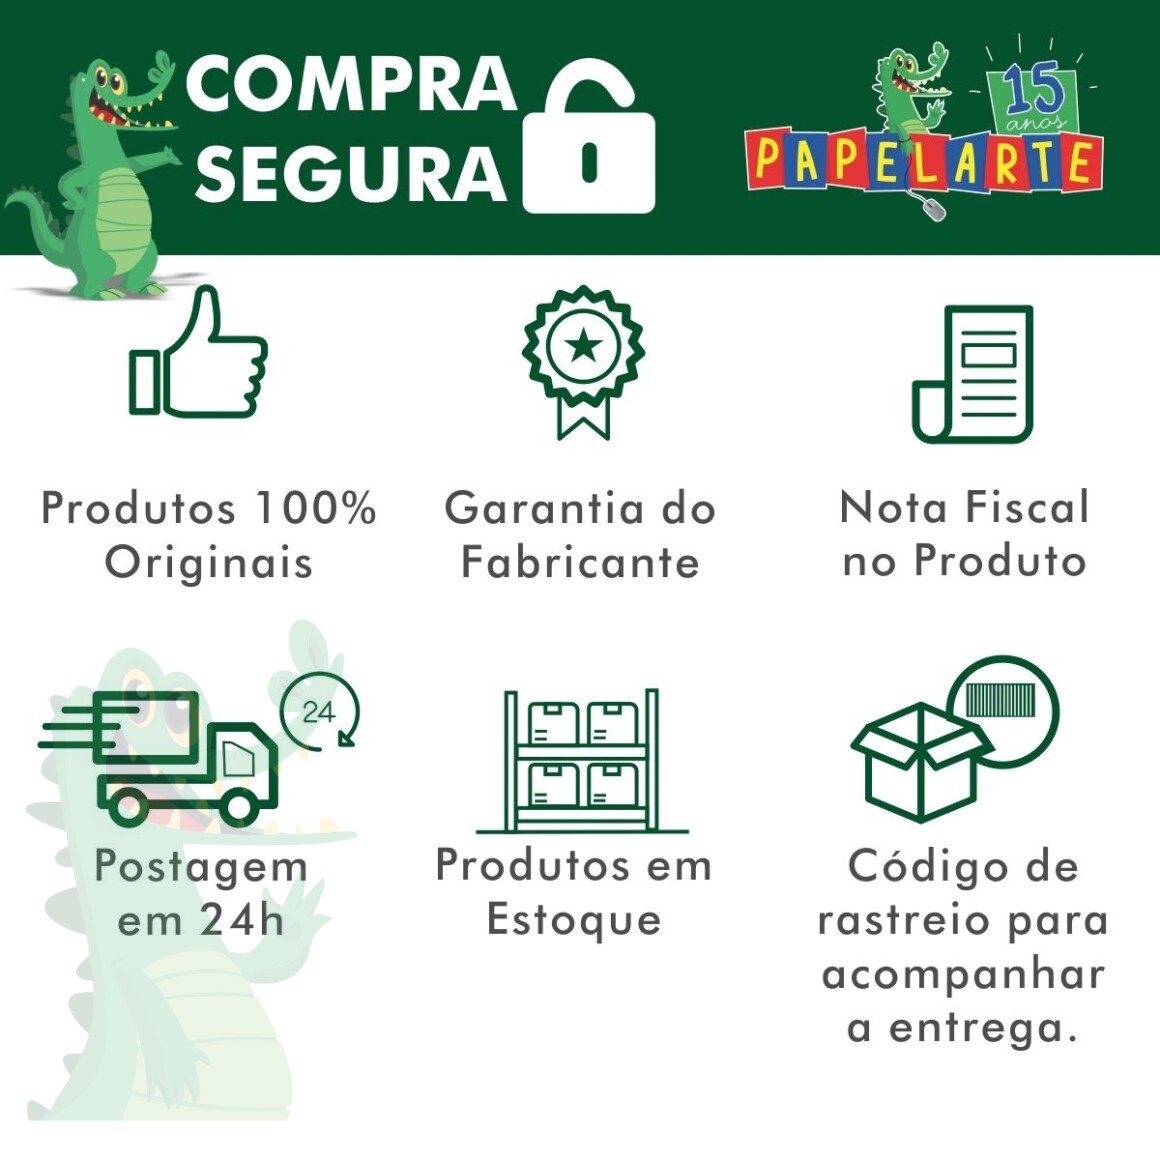 Jogo Pula Macaco da Estrela - Brinquedo Infantil Kids Toys BR em Portugues  